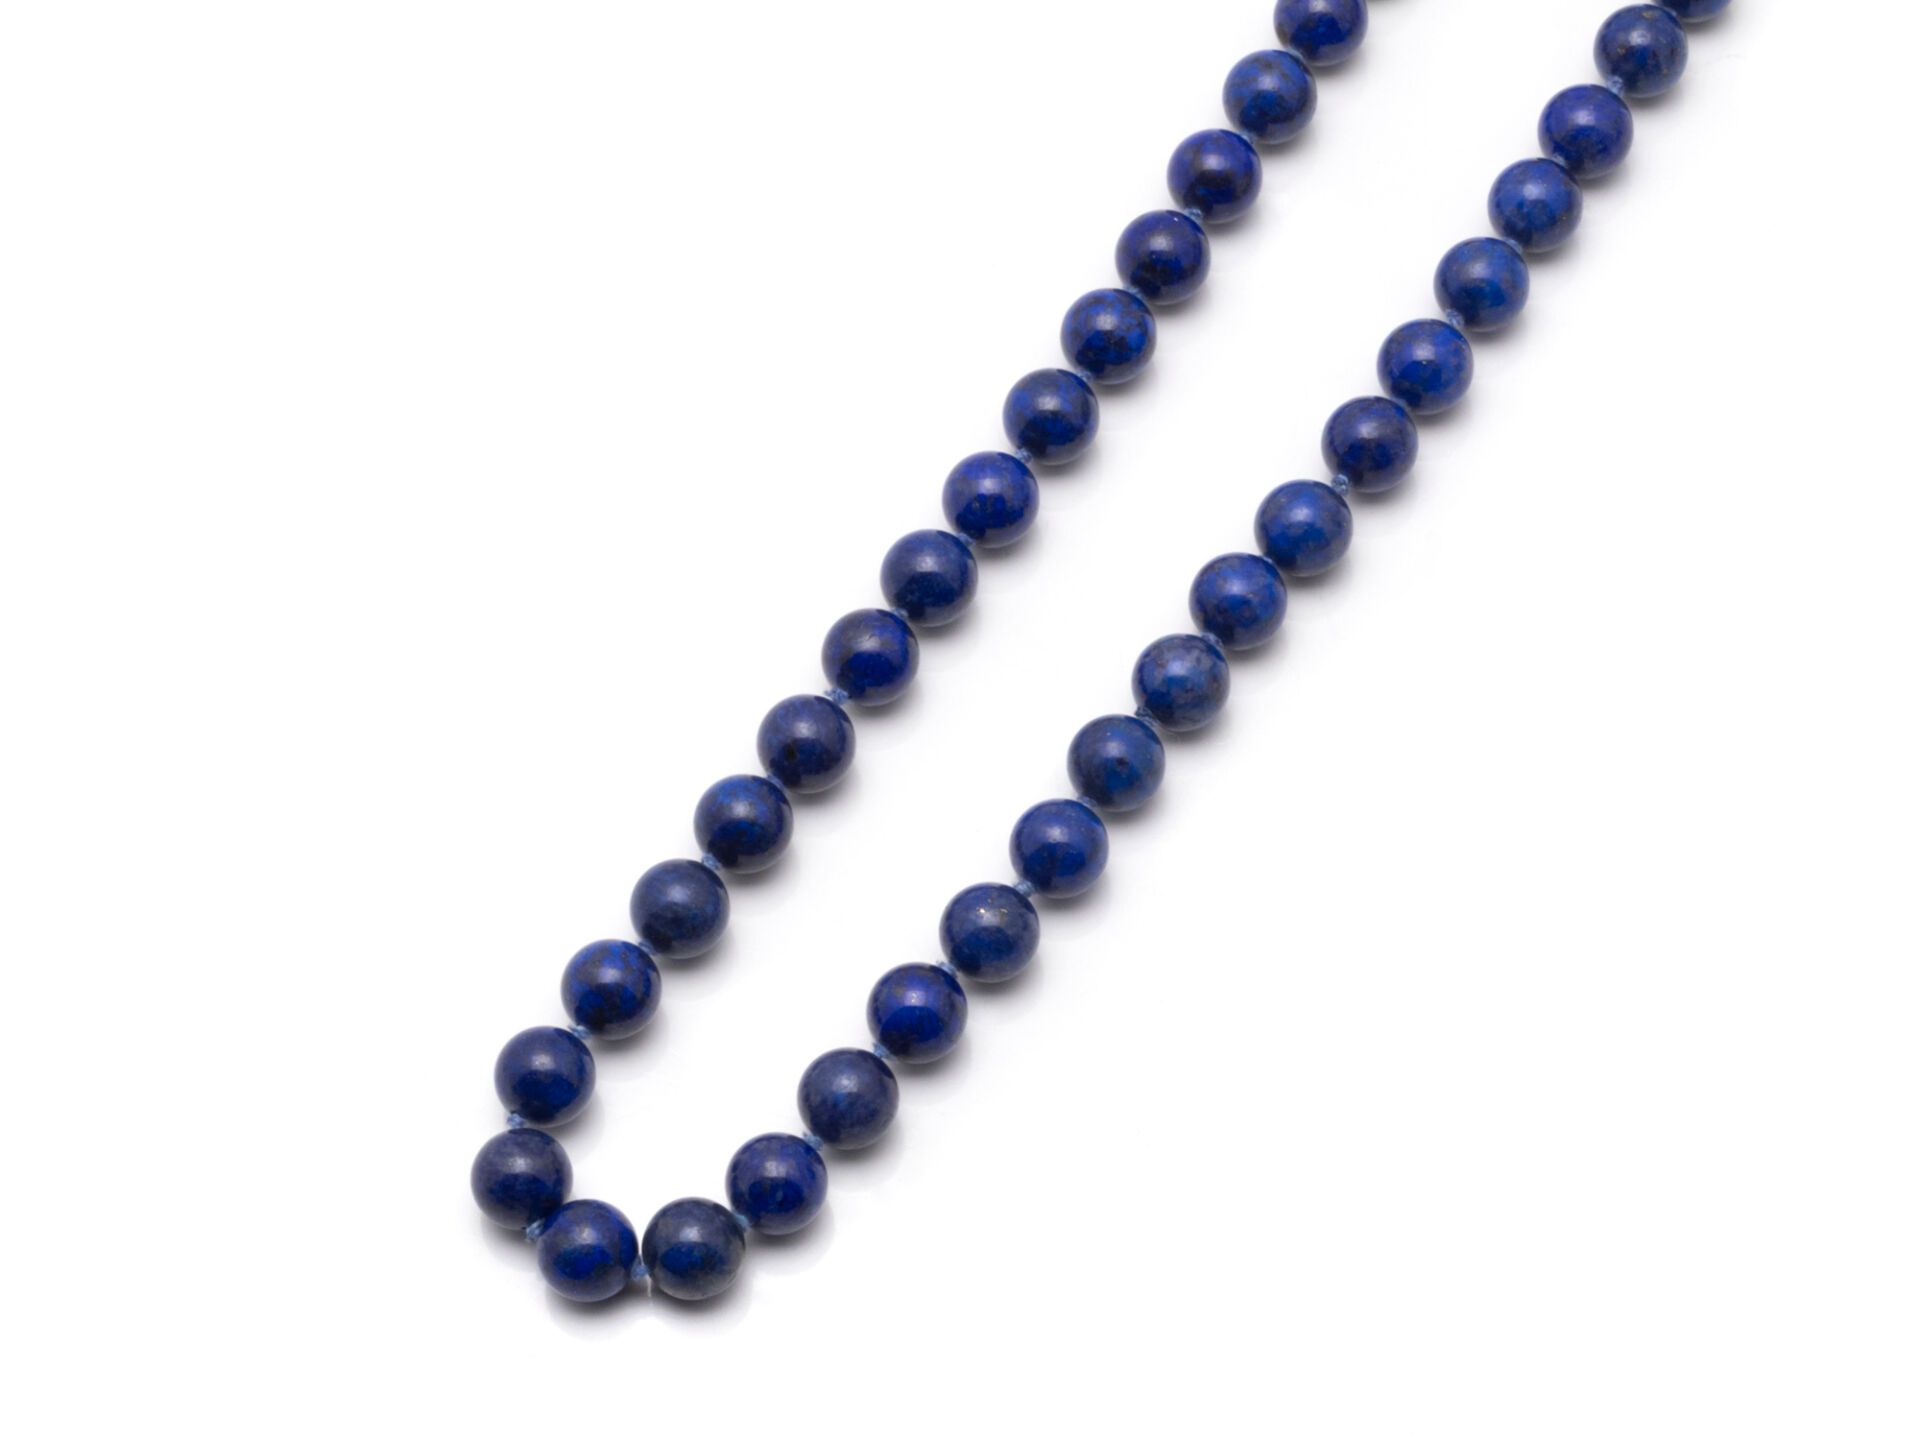 Null 项链由一串约 10 毫米的有色青金石珍珠组成。项链配有一个千分之 585 的黄金弹簧环扣。 
毛重：83.7 克。长度：61 厘米。